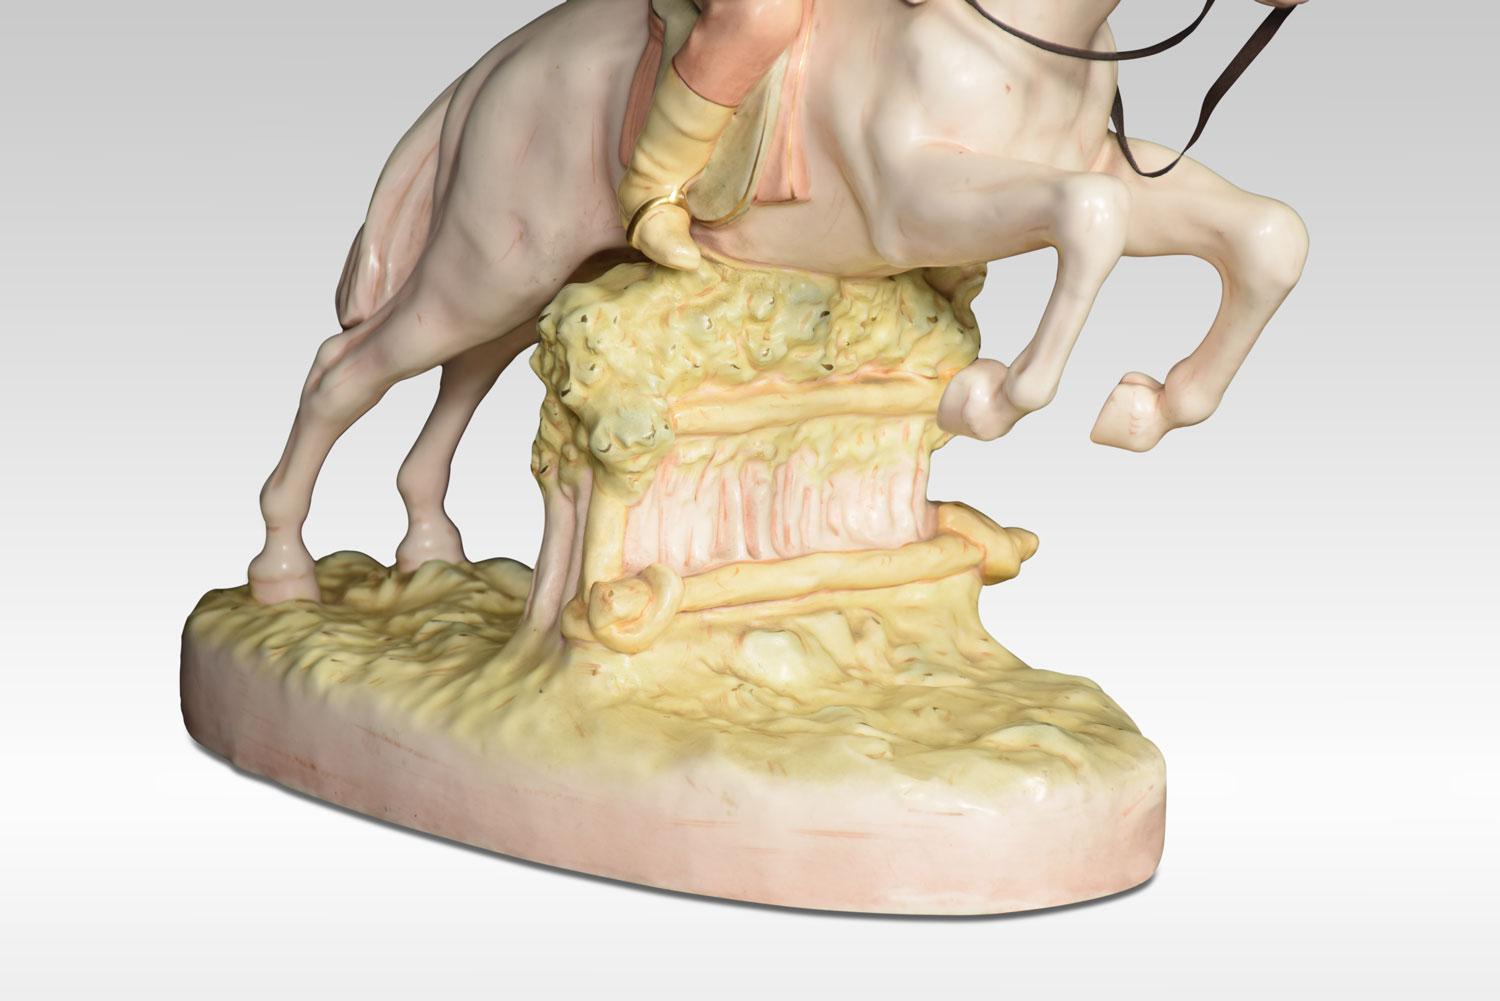 Royal Dux Porzellanfigur eines springenden Rennpferdes mit Jockey.
Abmessungen:
Höhe 15 Zoll
Breite 18 Zoll
Tiefe 9 Zoll.